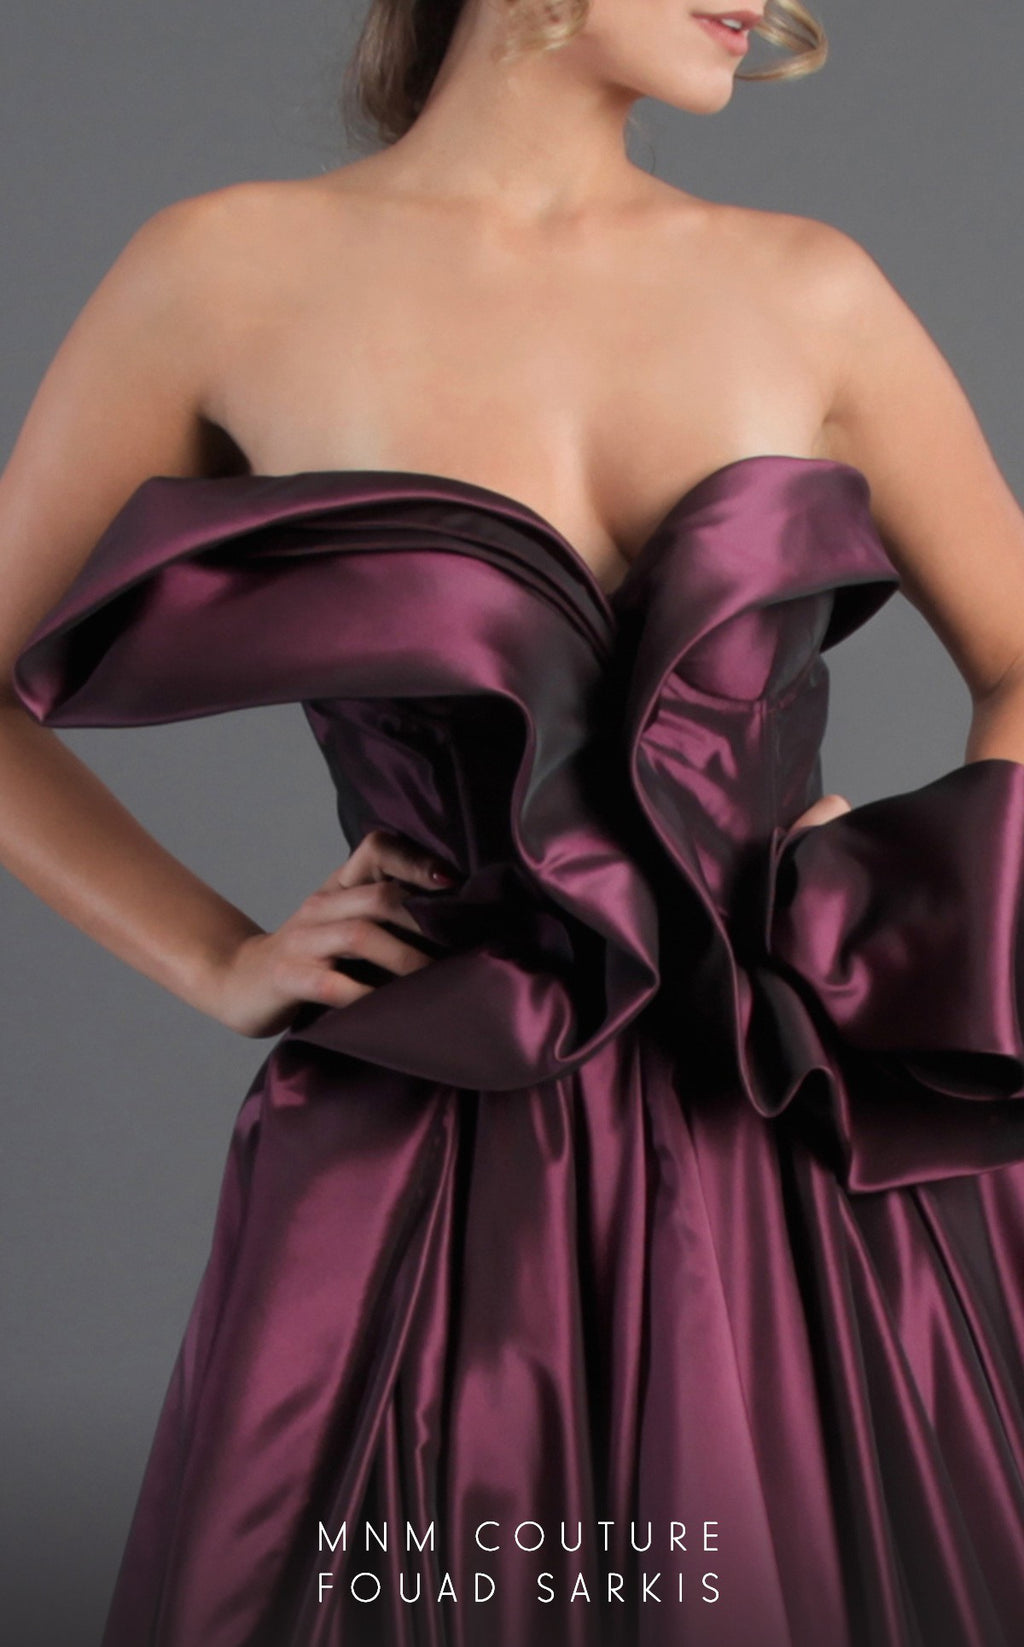 MNM Couture 2313 Fouad Sarkis Strapless Ballgown - CYC Boutique